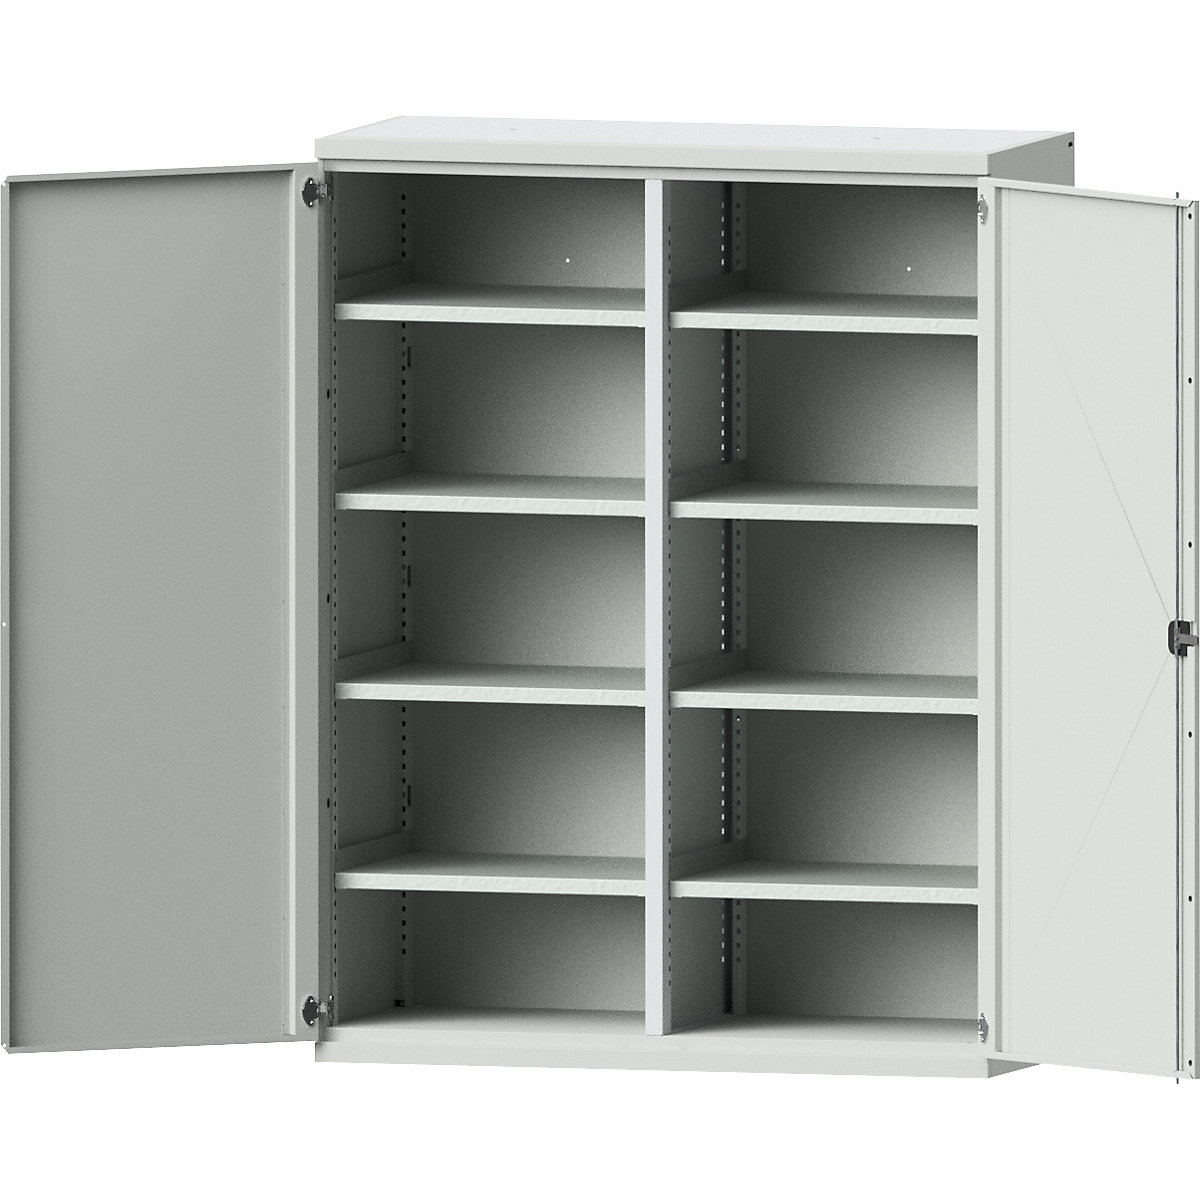 JUMBO heavy duty cupboard made of sheet steel – eurokraft pro